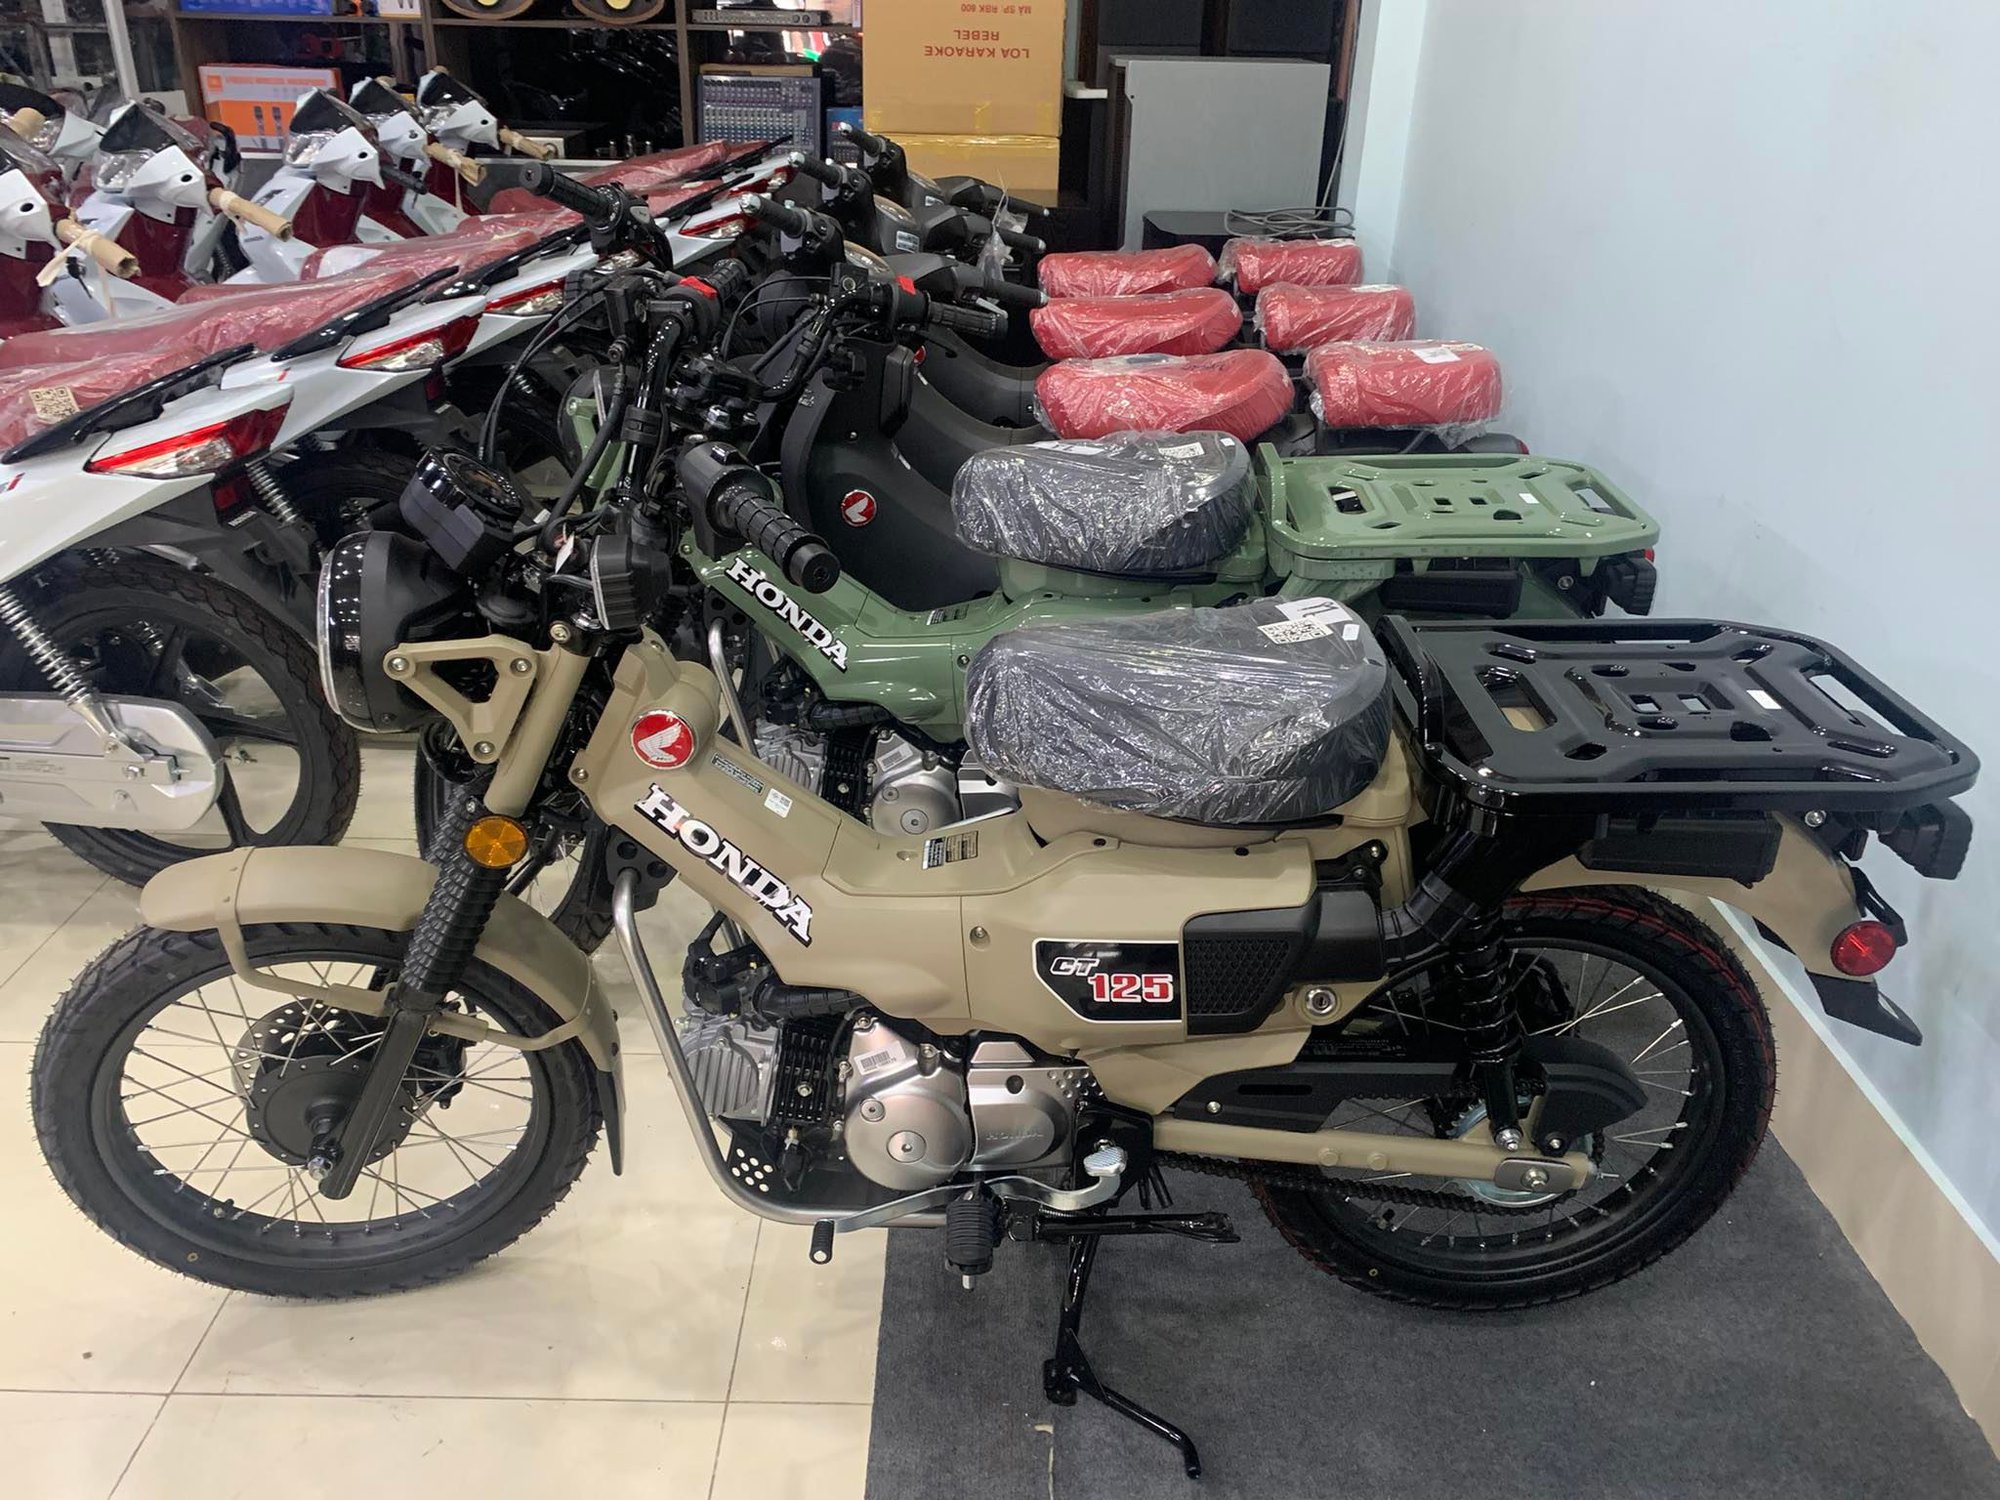 Những mẫu xe mô tô dưới 500 phân khối đang có mặt tại thị trường Việt